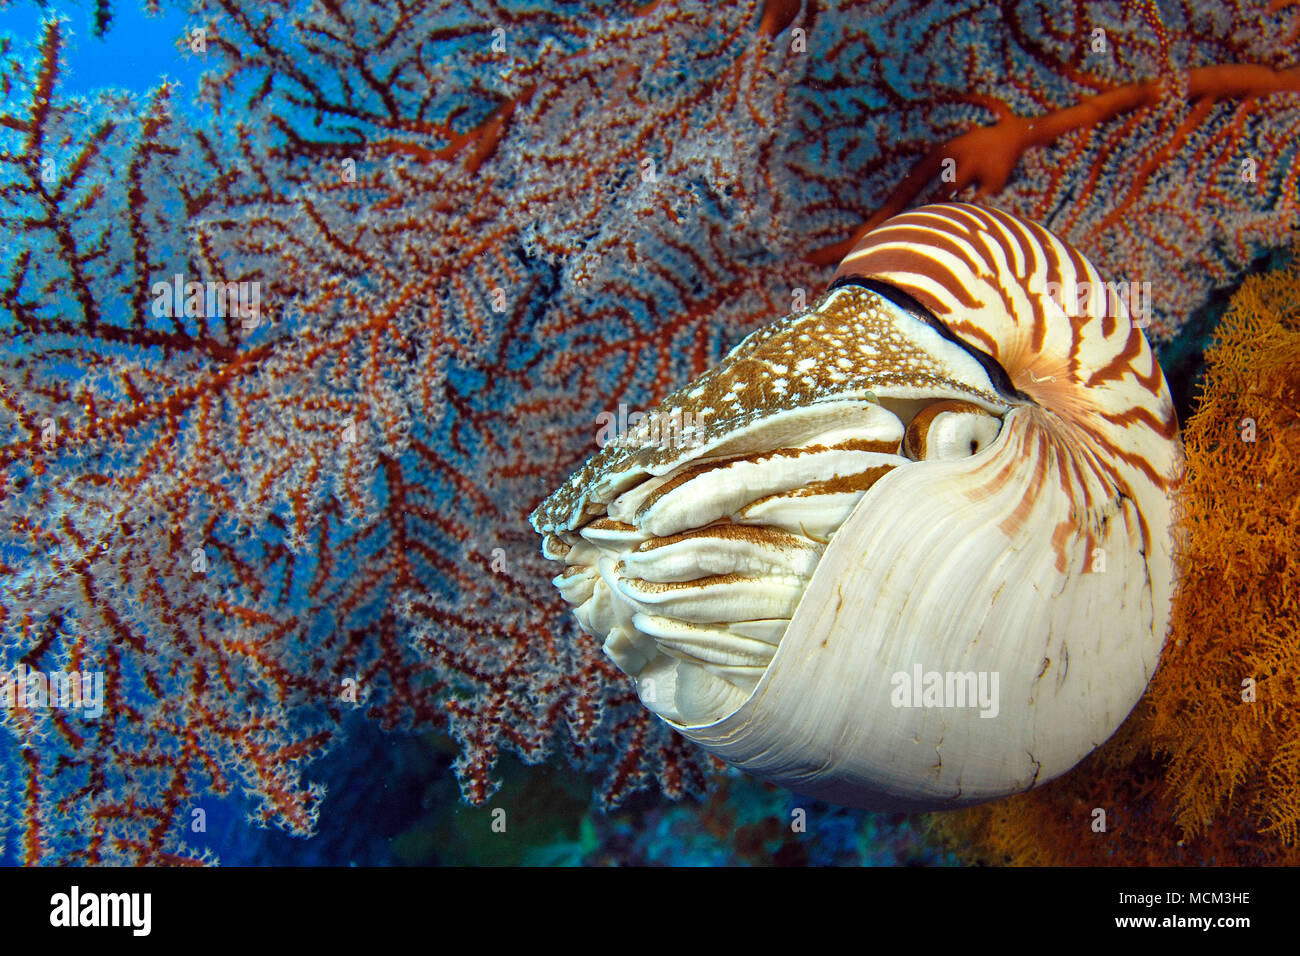 Common Nautilus (Nautilus pompilius) at coral reef, Palau, Micronesia Stock Photo